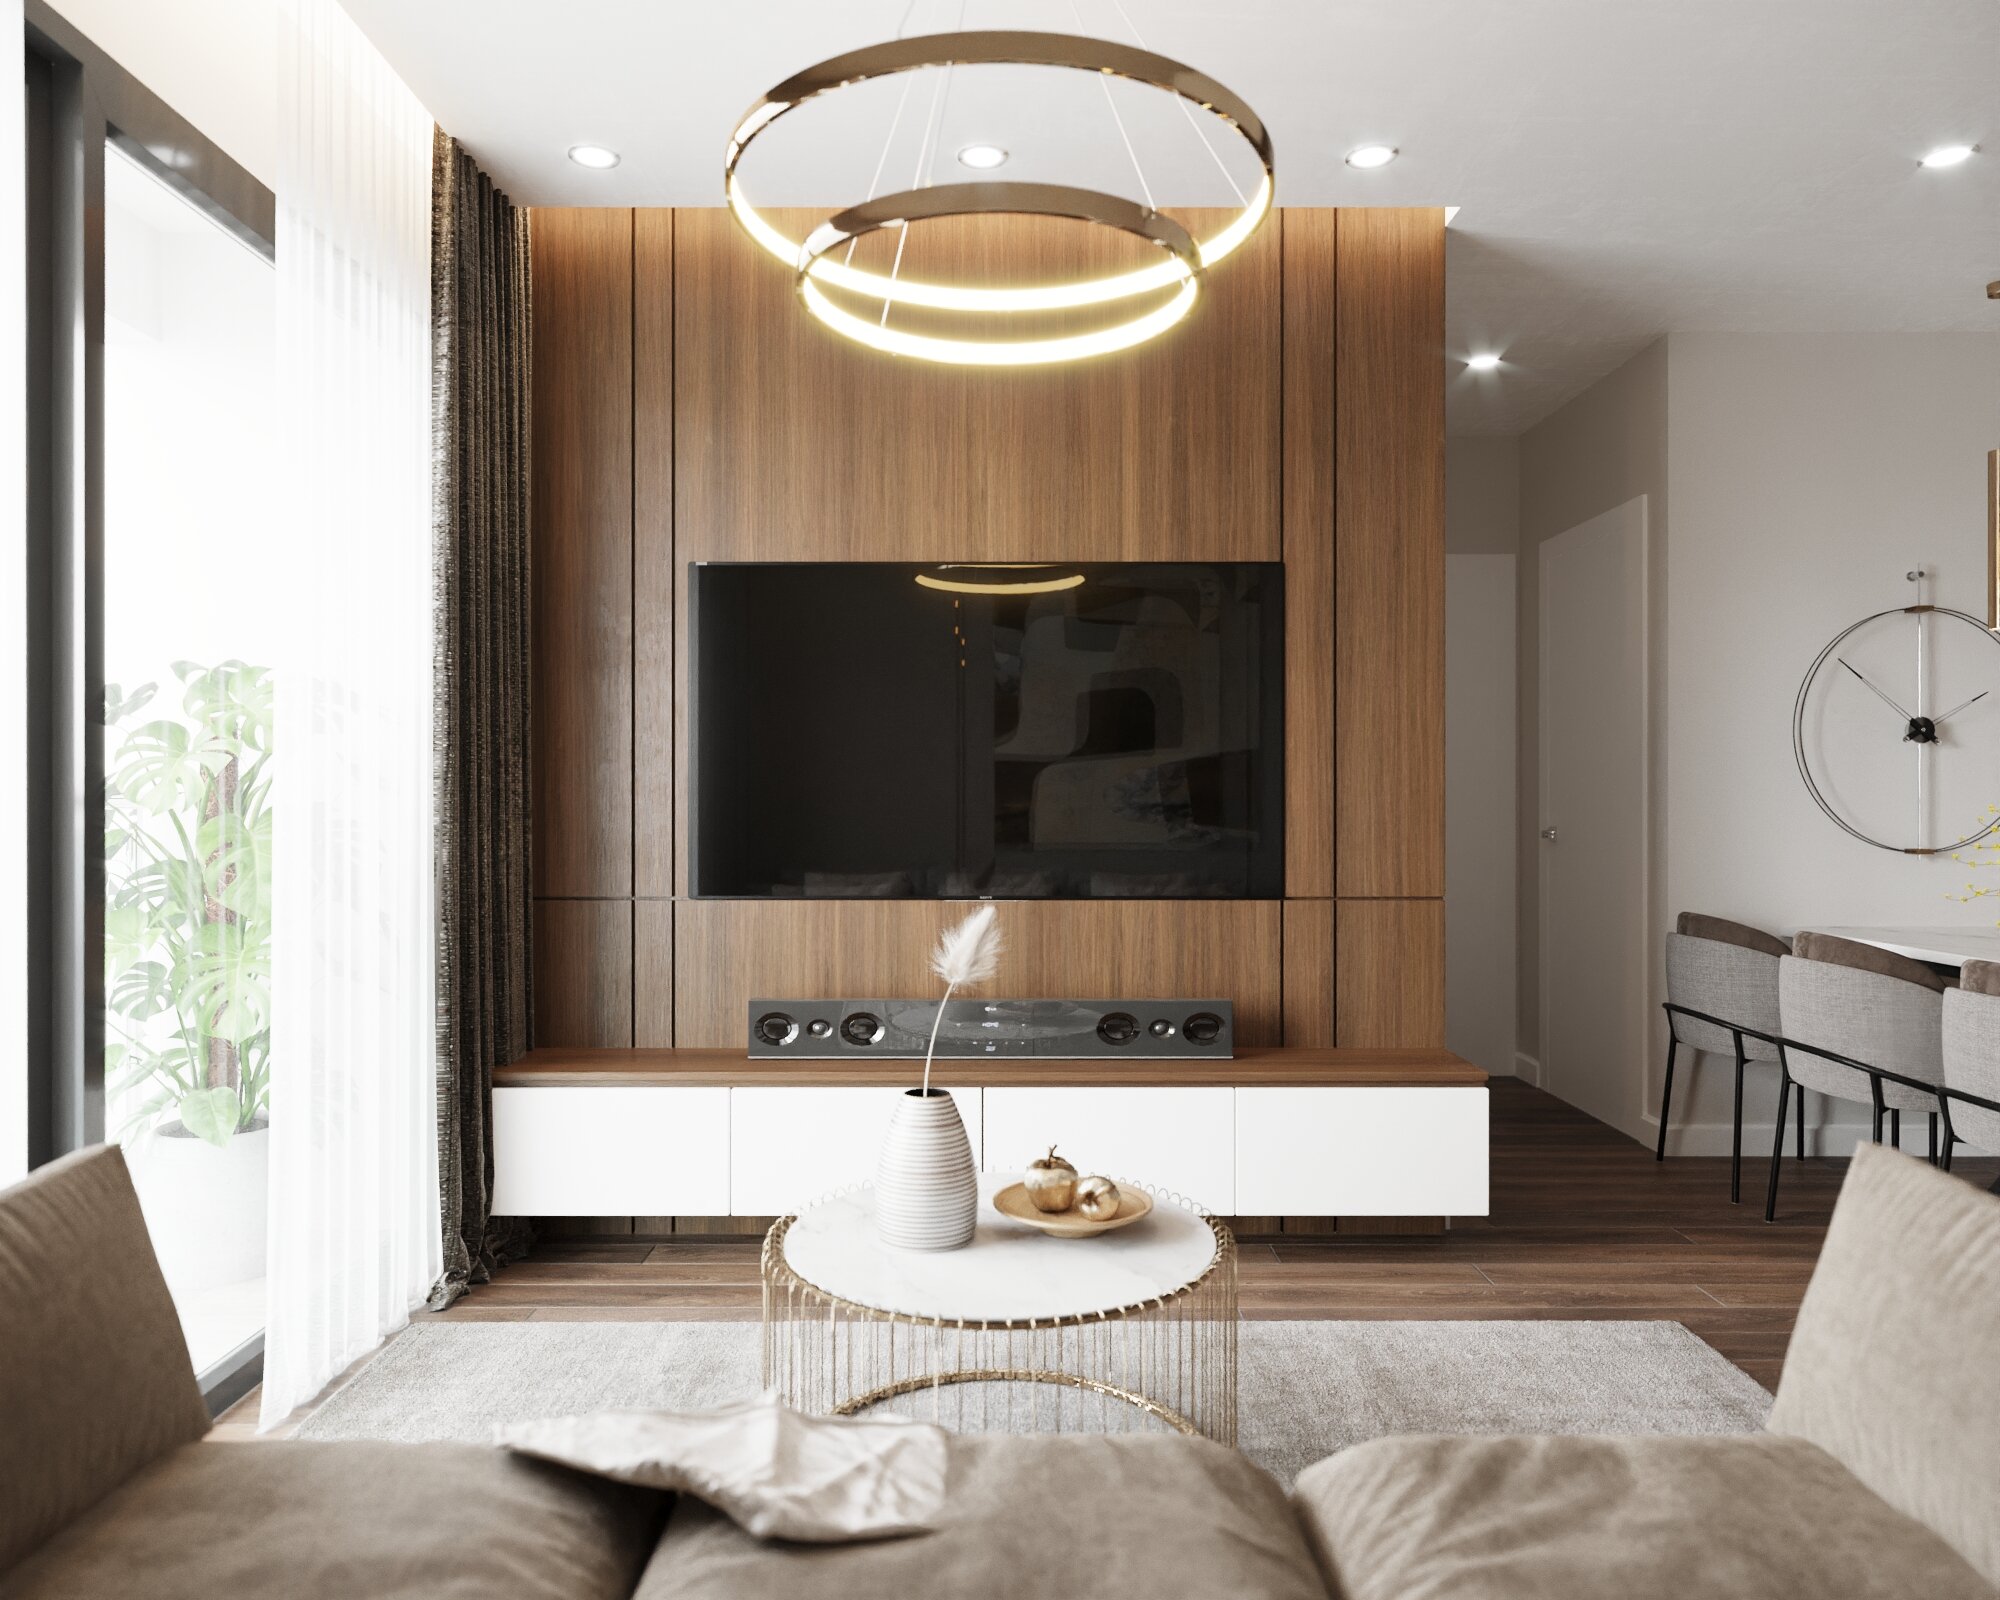 Thiết kế nội thất phòng khách chung cư hiện đại